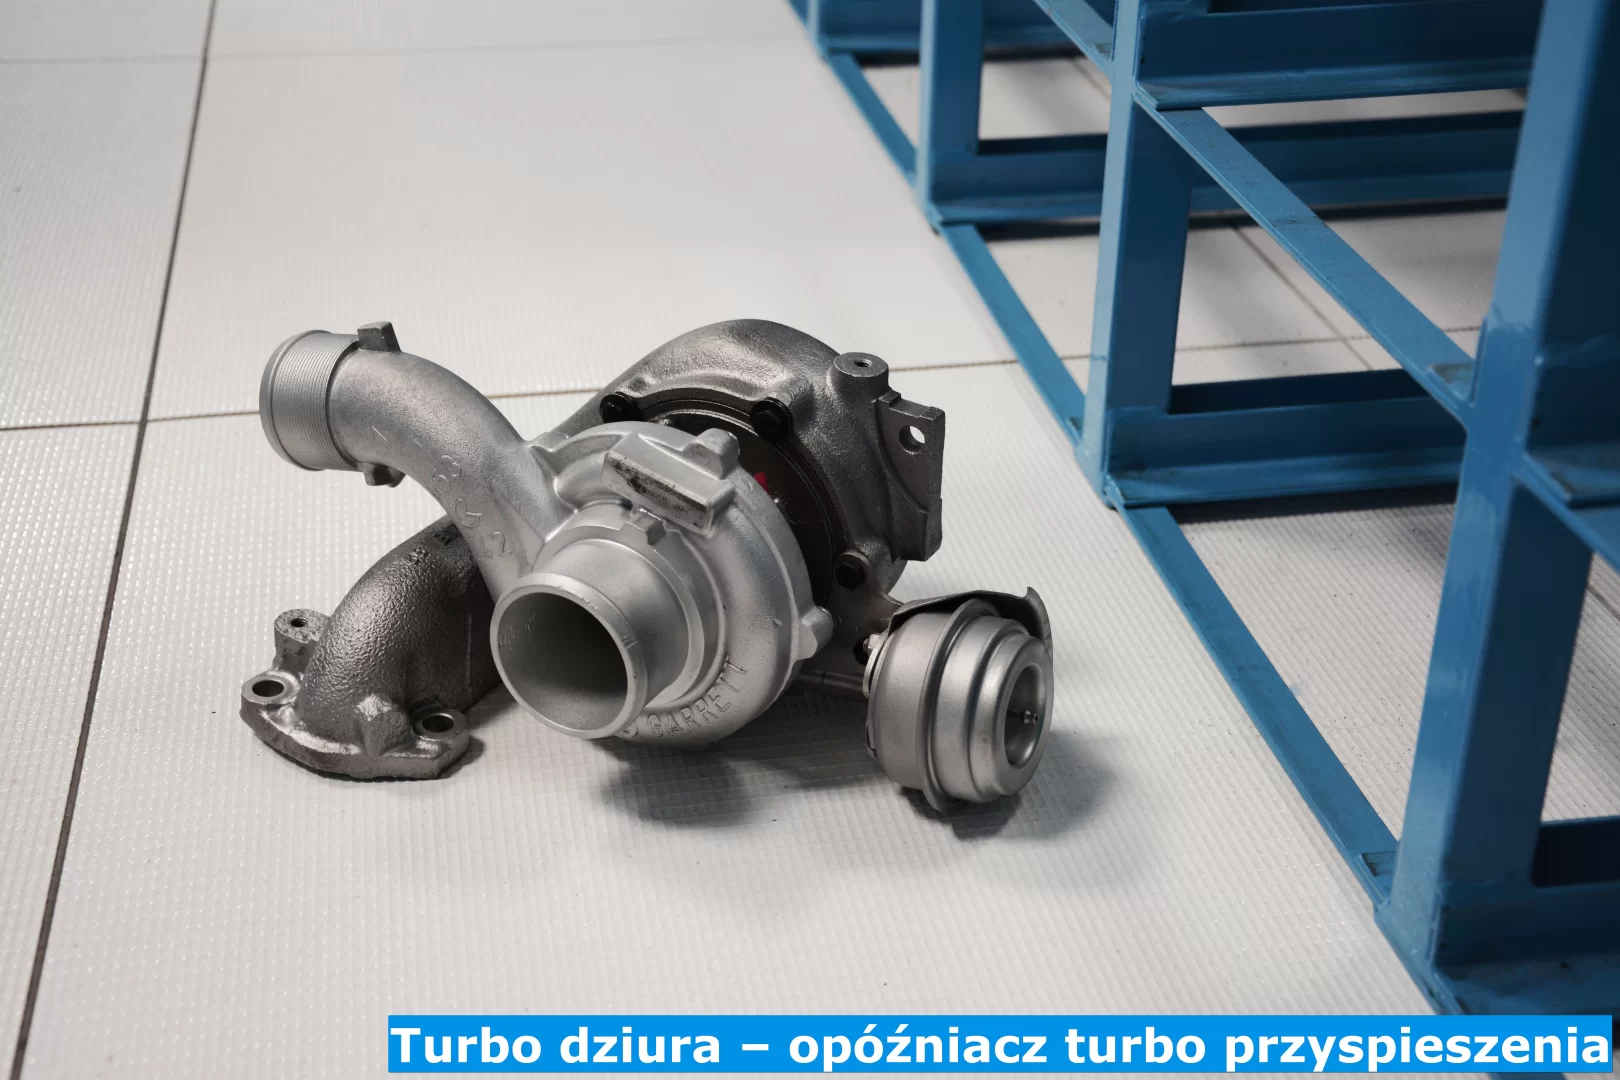 Turbo dziura – opóźniacz turbo przyspieszenia